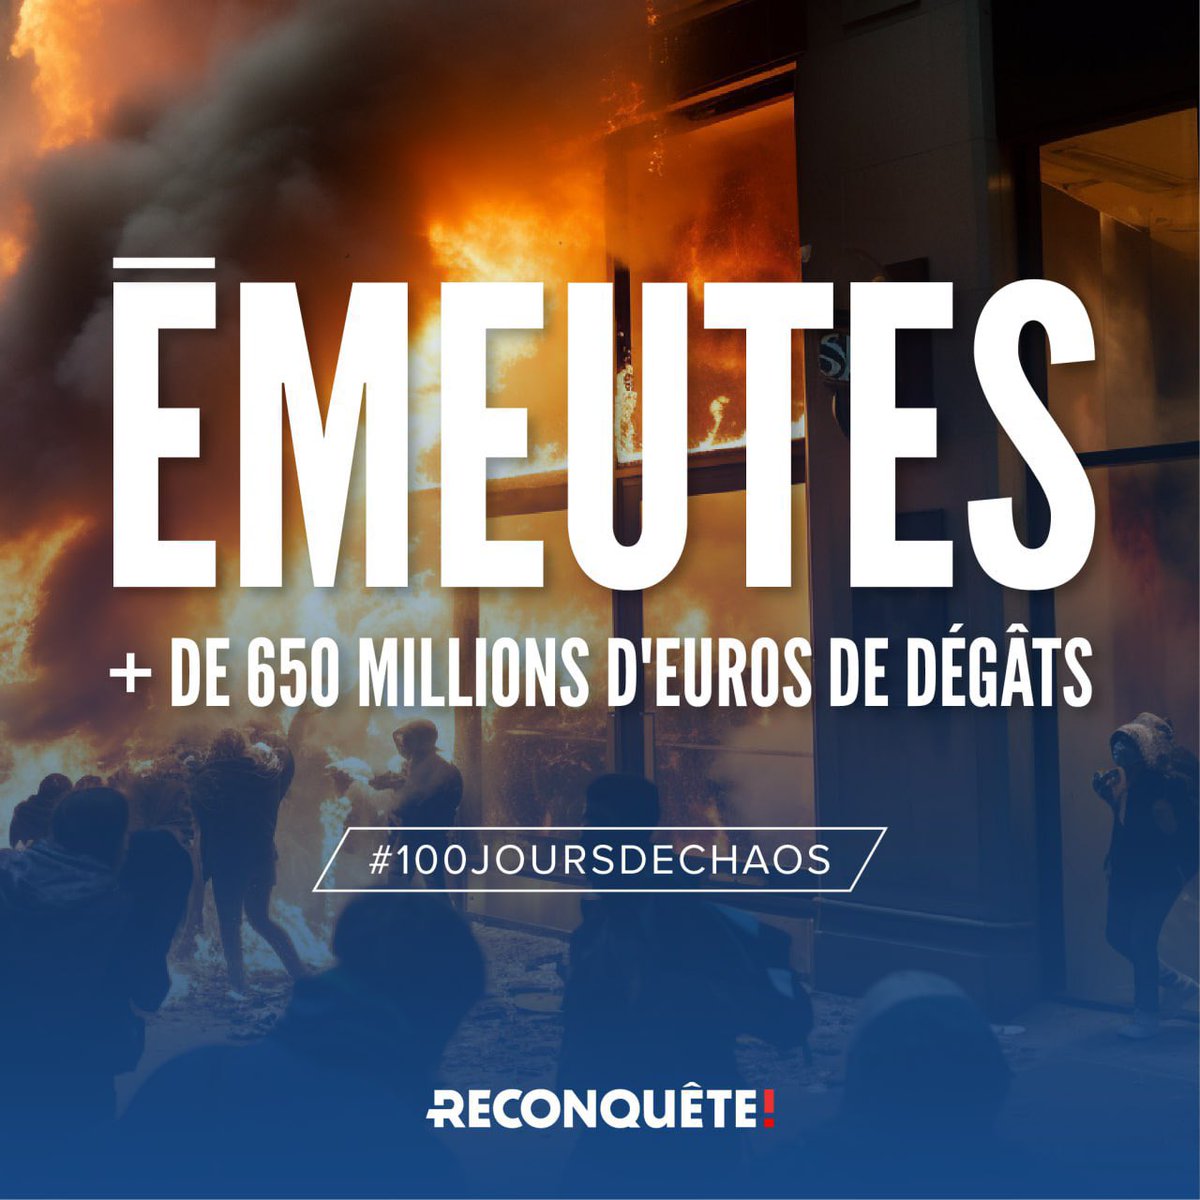 #100JoursDeChaos #Émeutes
#Reconquête